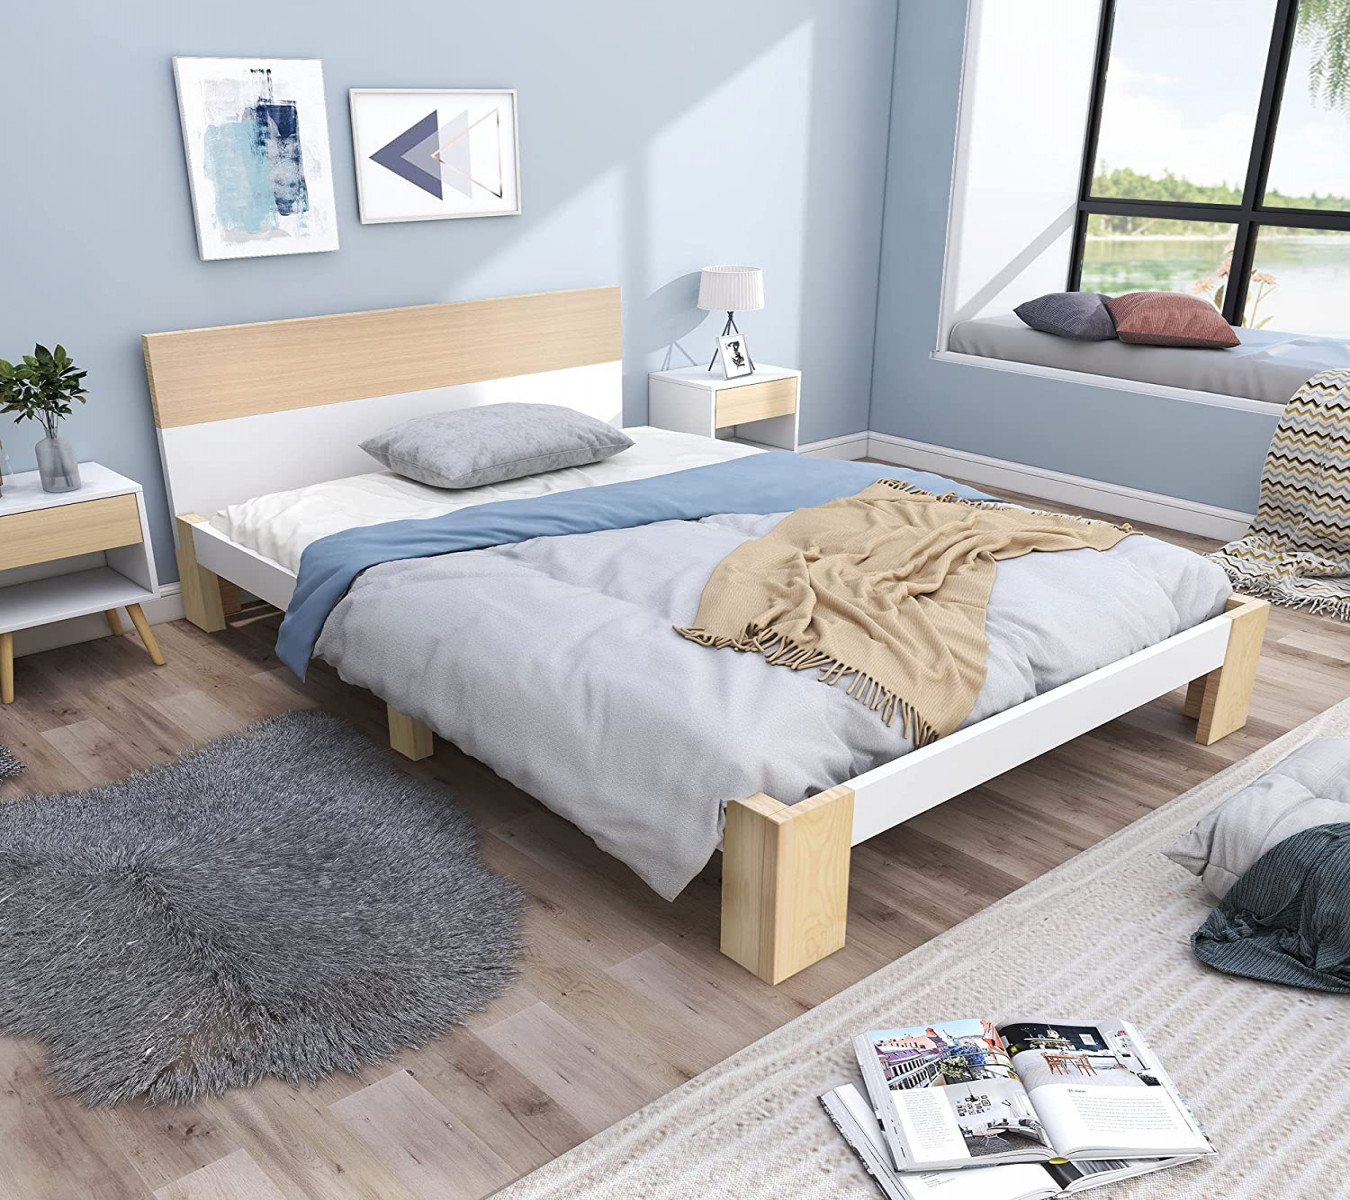 BTM Wooden Single Bed Frame with Slatted Frame, Headboard, Solid